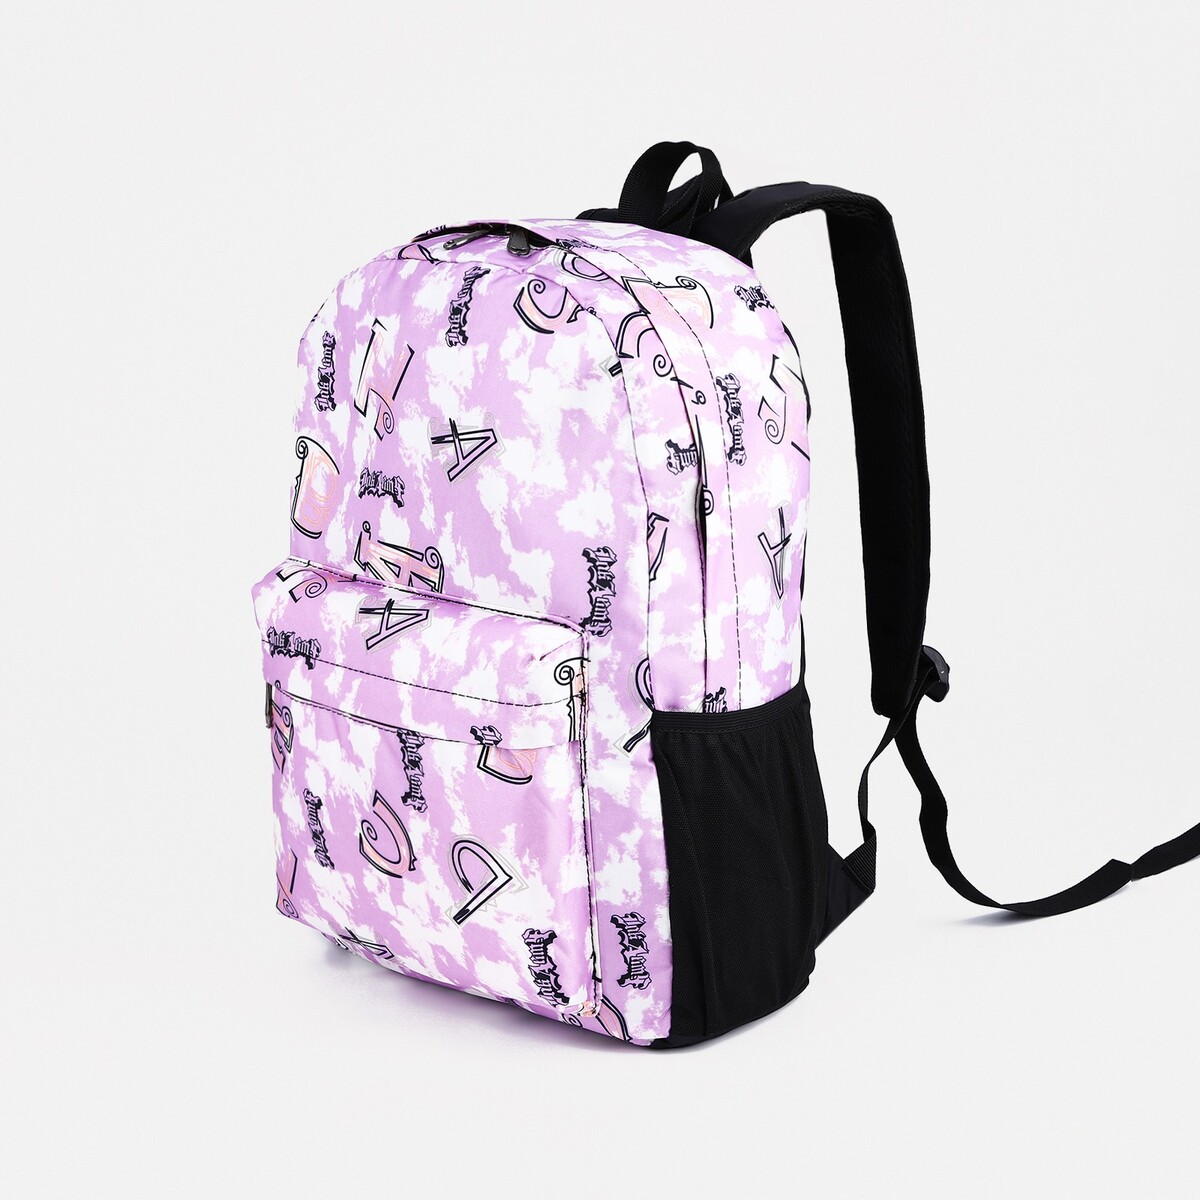 Рюкзак школьный из текстиля на молнии, 3 кармана, цвет фиолетовый косметичка на молнии фиолетовый разно ный